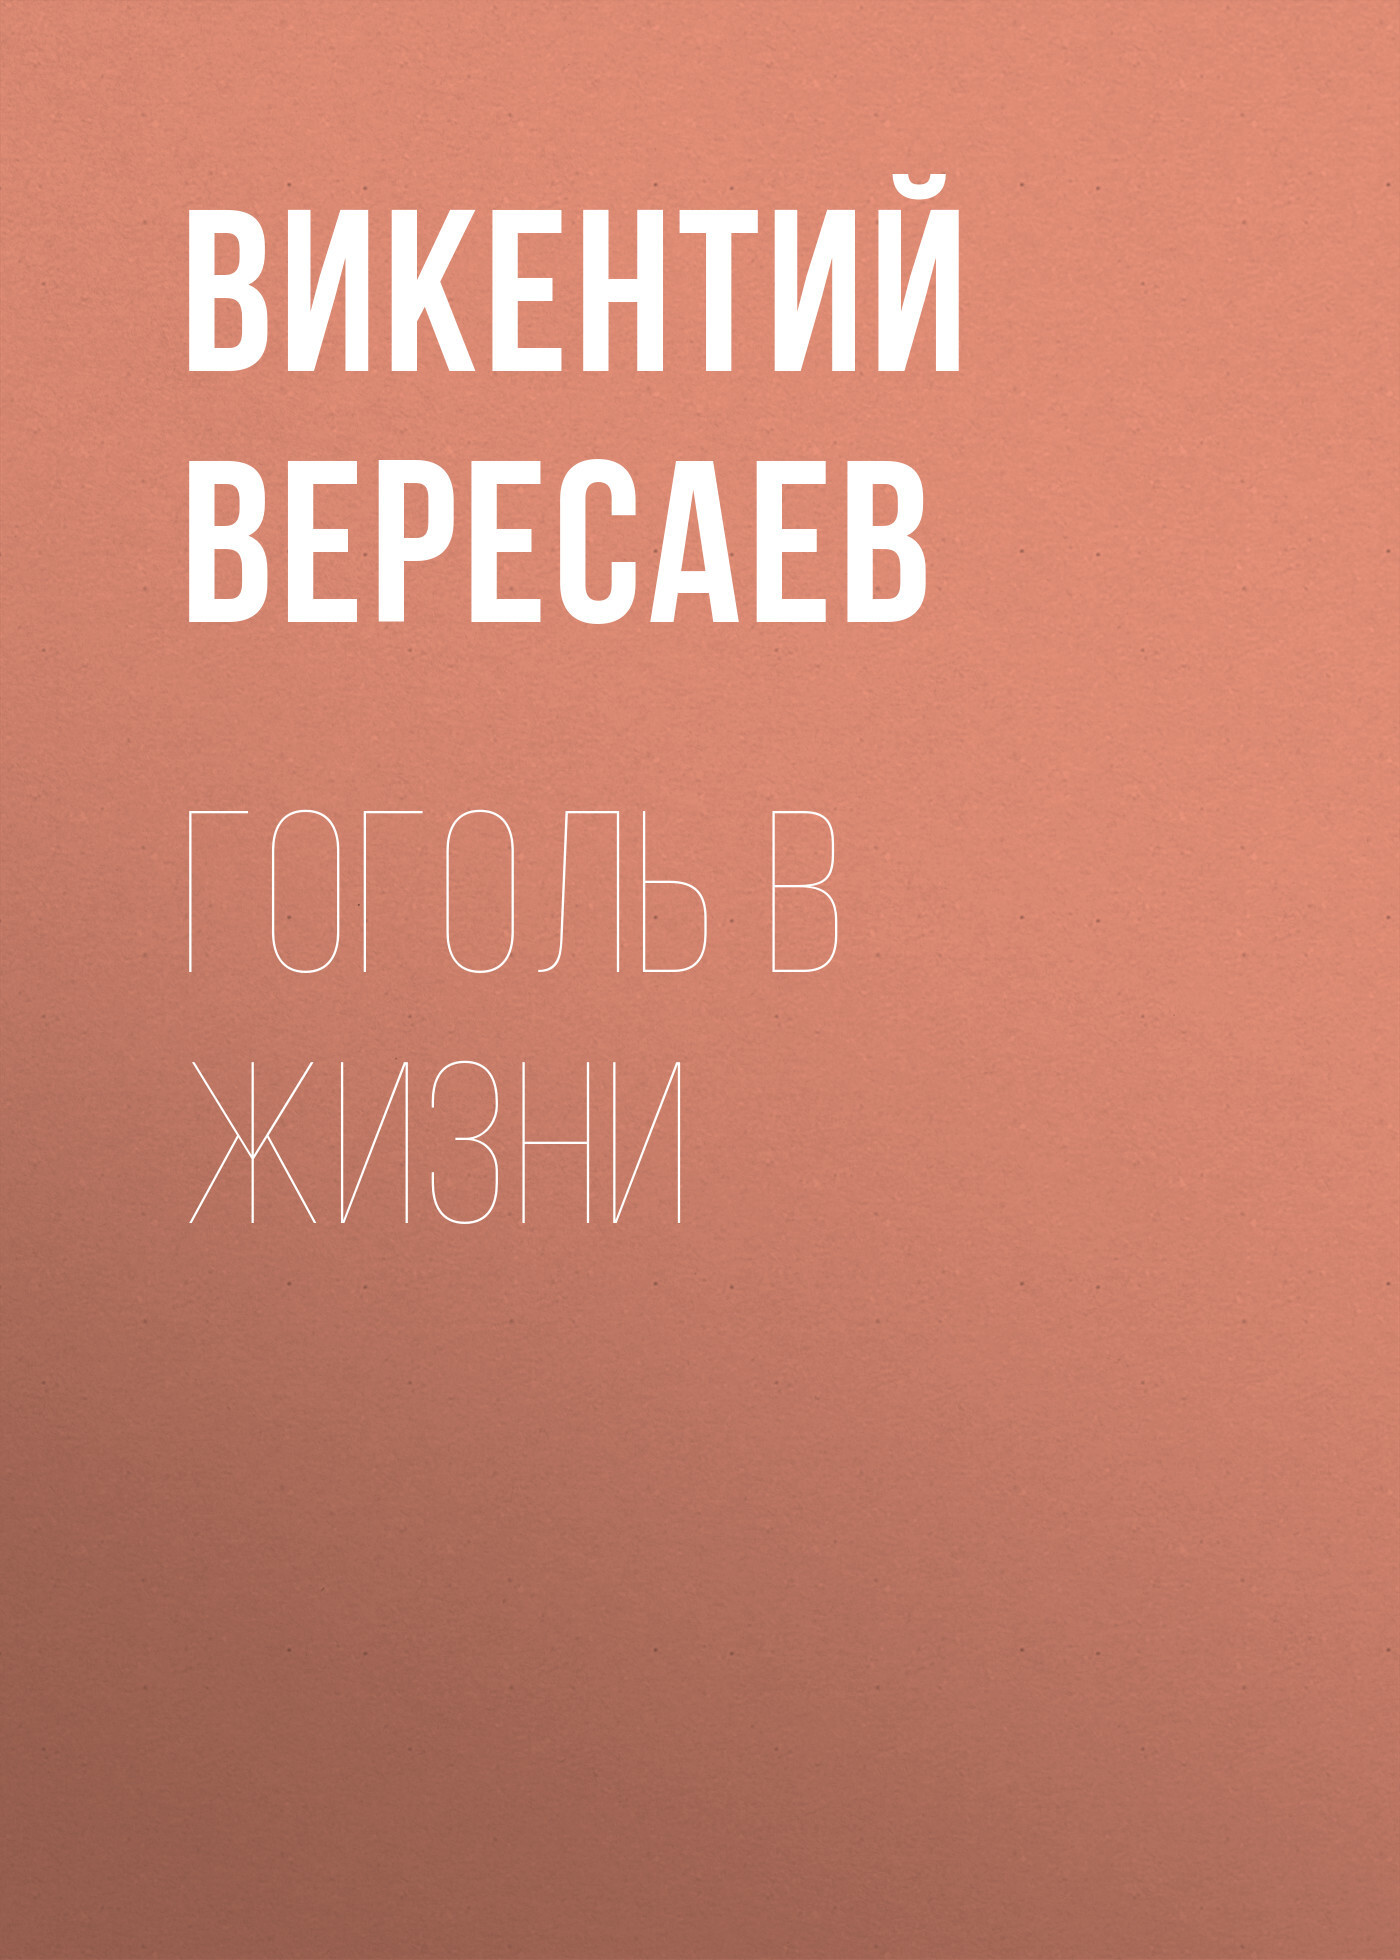 Книга Гоголь в жизни из серии , созданная Викентий Вересаев, может относится к жанру Языкознание, Биографии и Мемуары. Стоимость электронной книги Гоголь в жизни с идентификатором 26717557 составляет 5.99 руб.